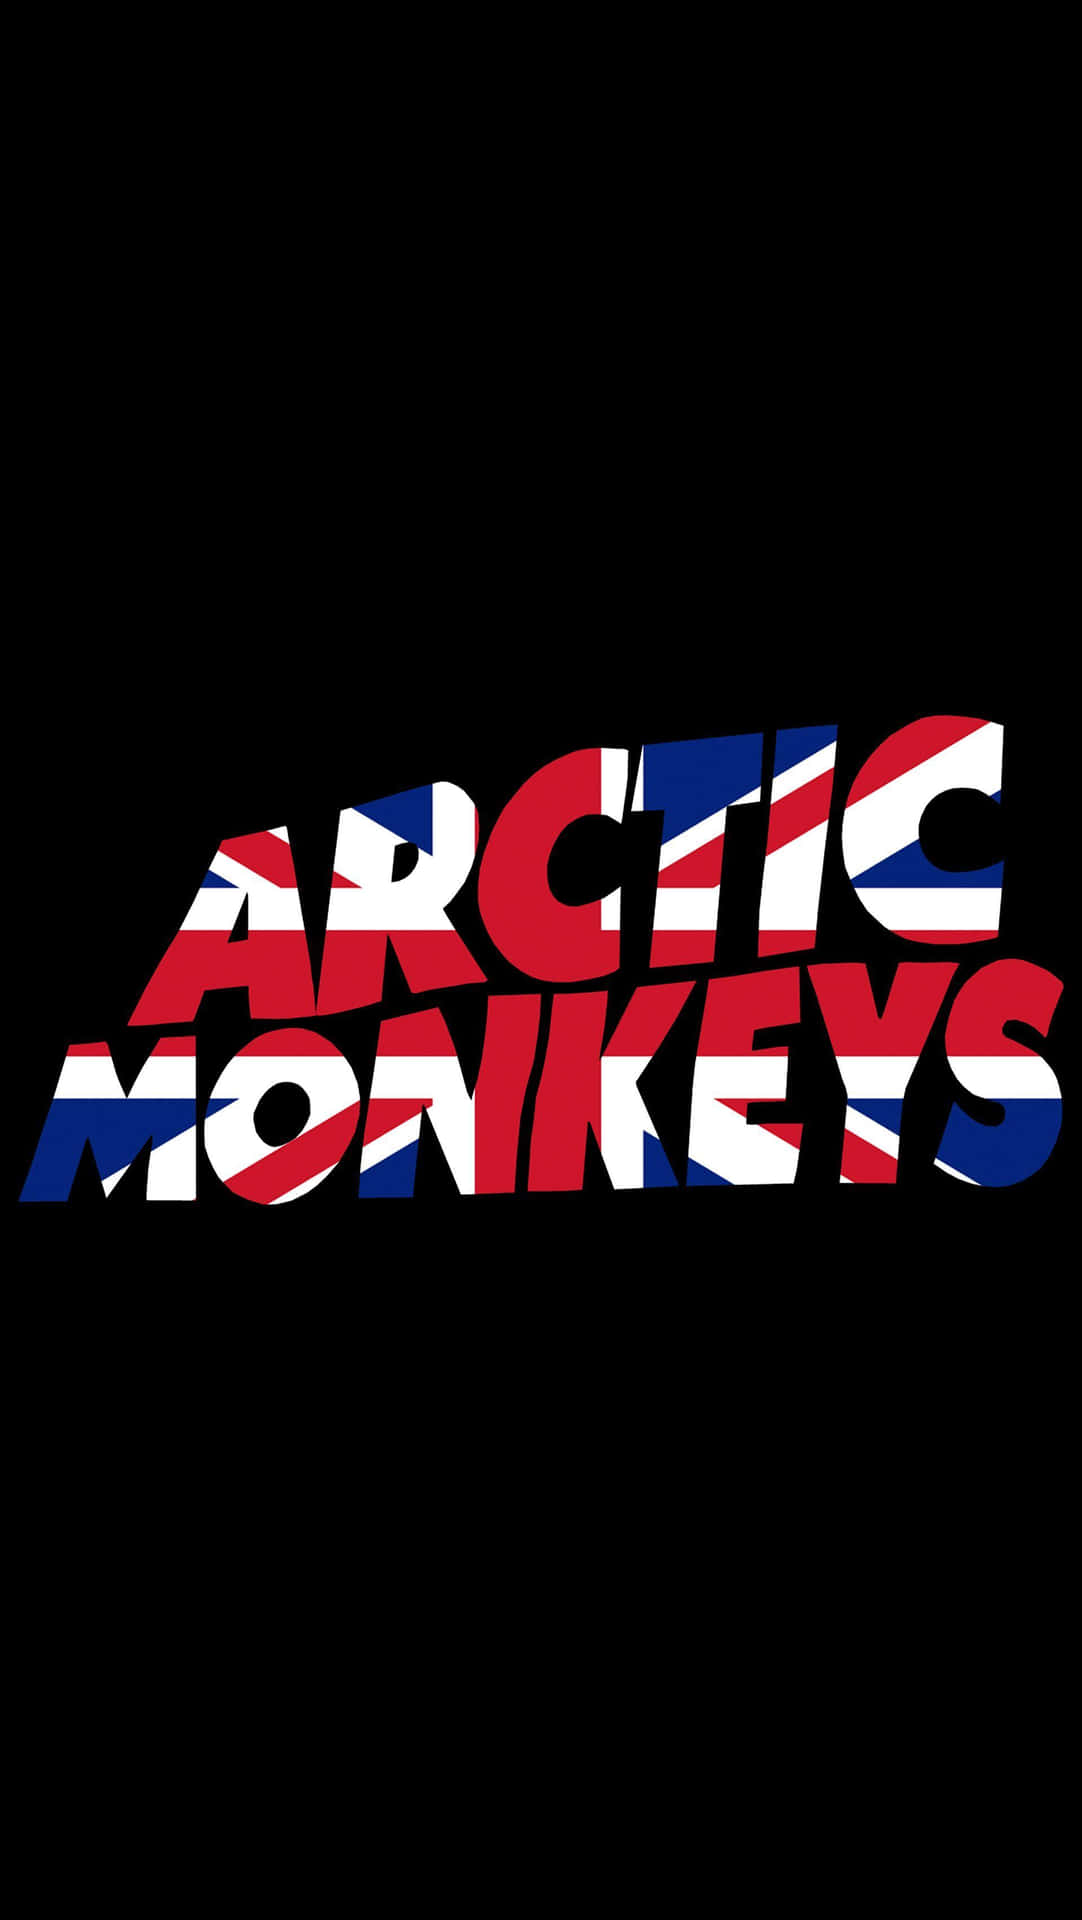 Arctic Monkeys Band Logo Background